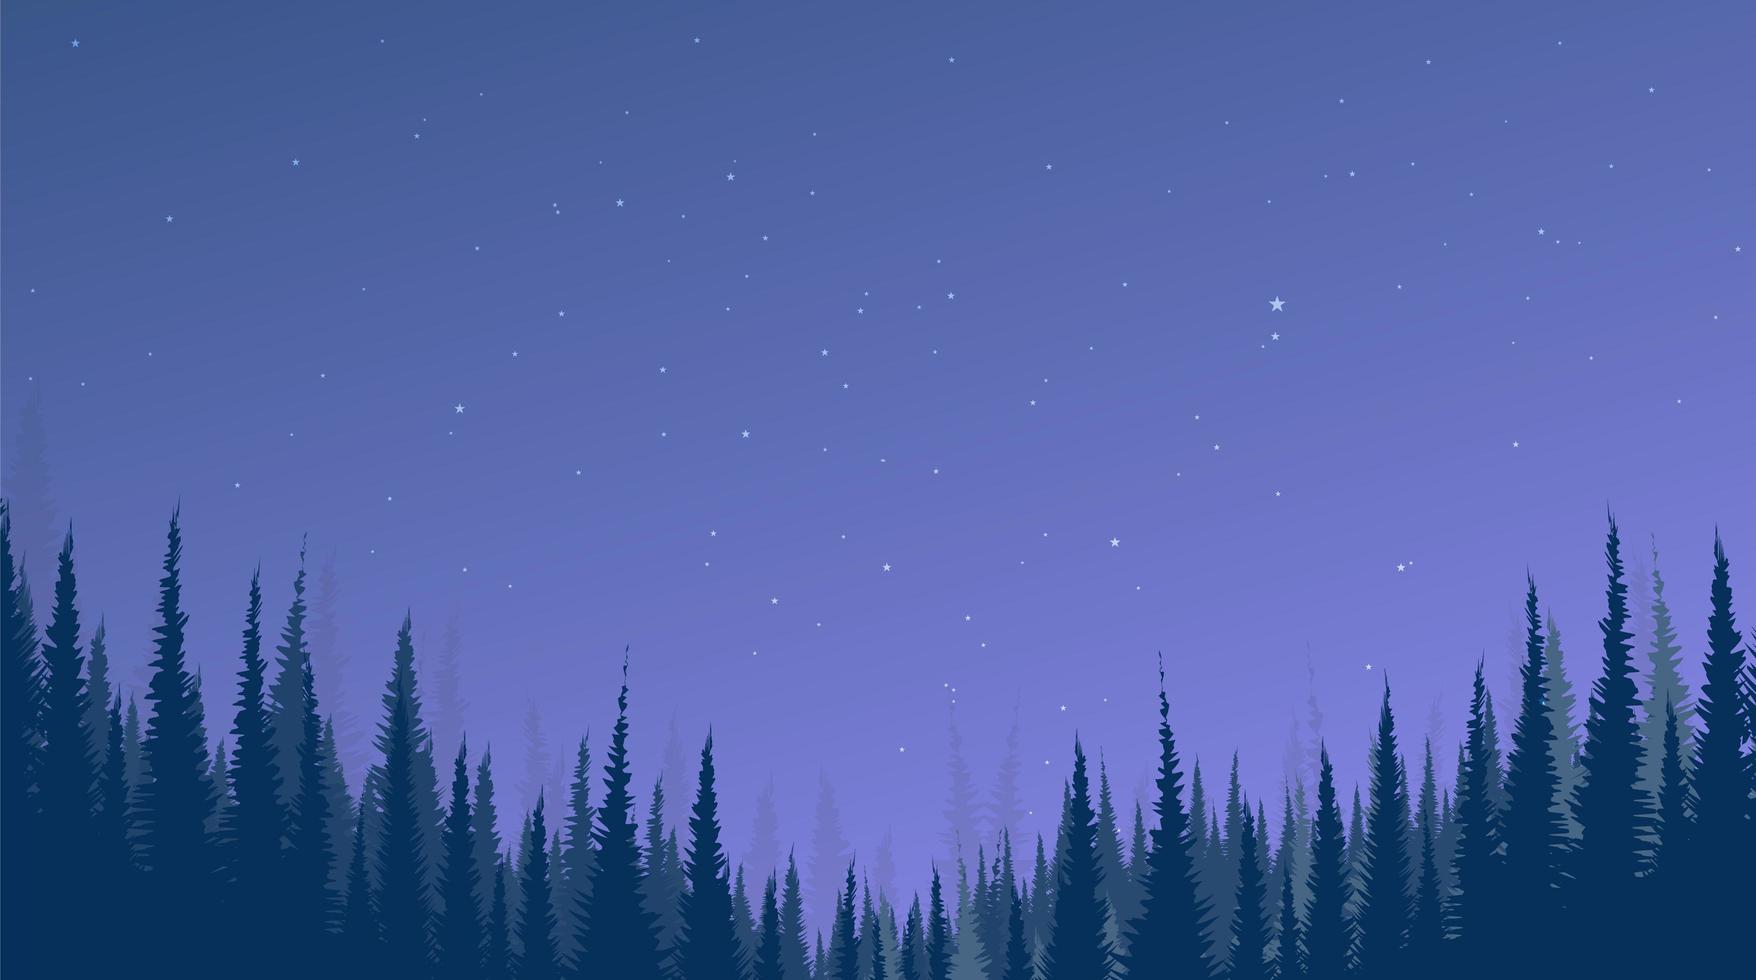 Fondo de paisaje nocturno con bosque de pinos y estrella. vector